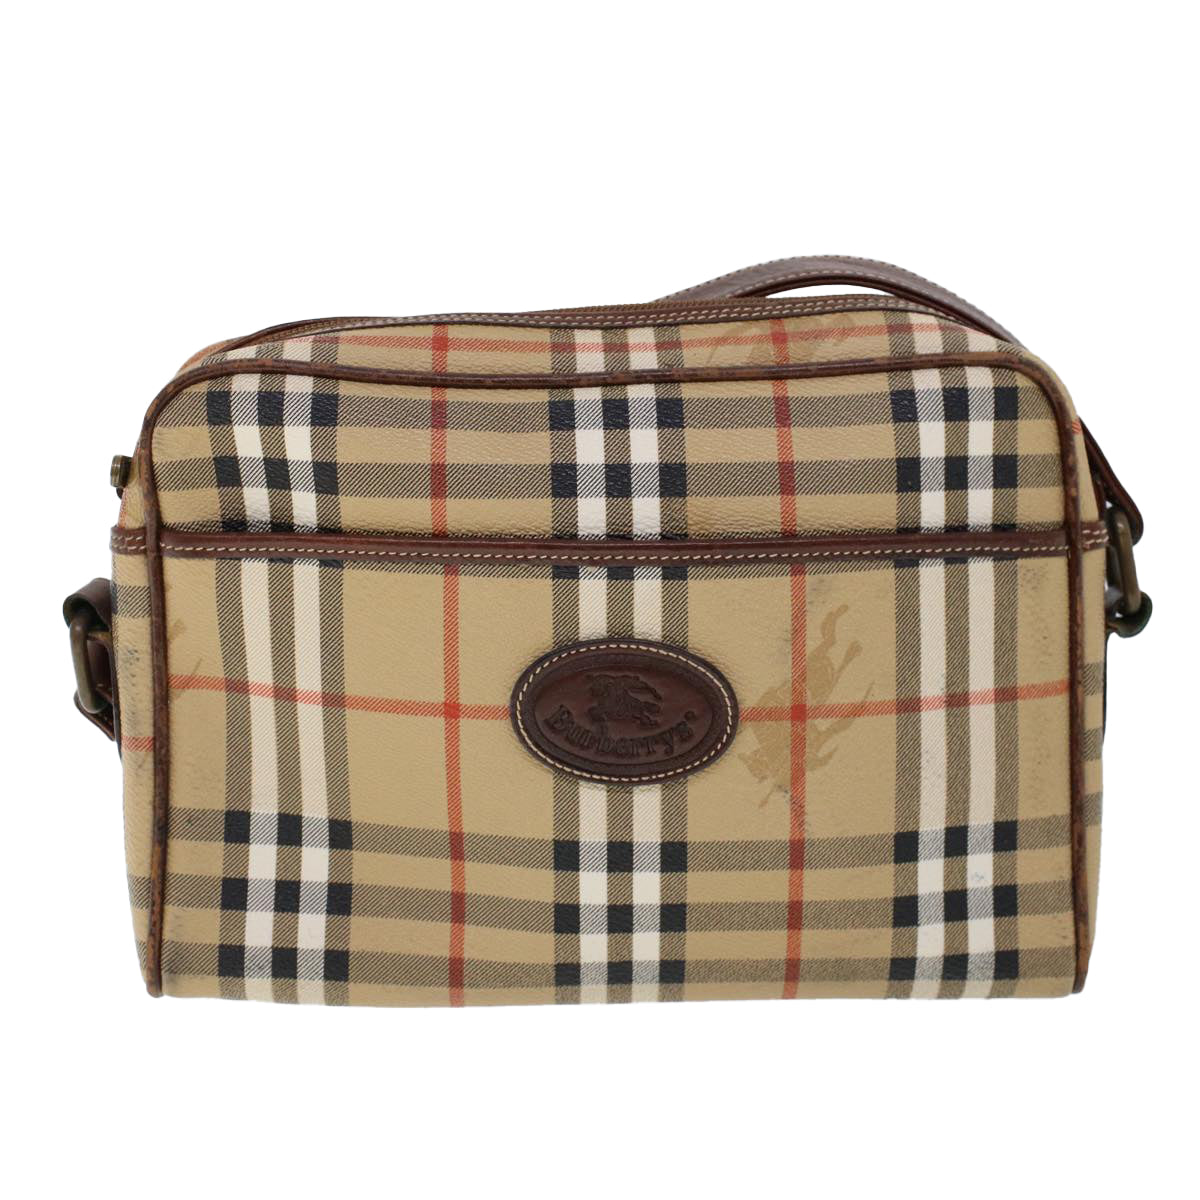 Burberrys Nova Check Shoulder Bag PVC Leather Beige Brown Auth 53729 - 0